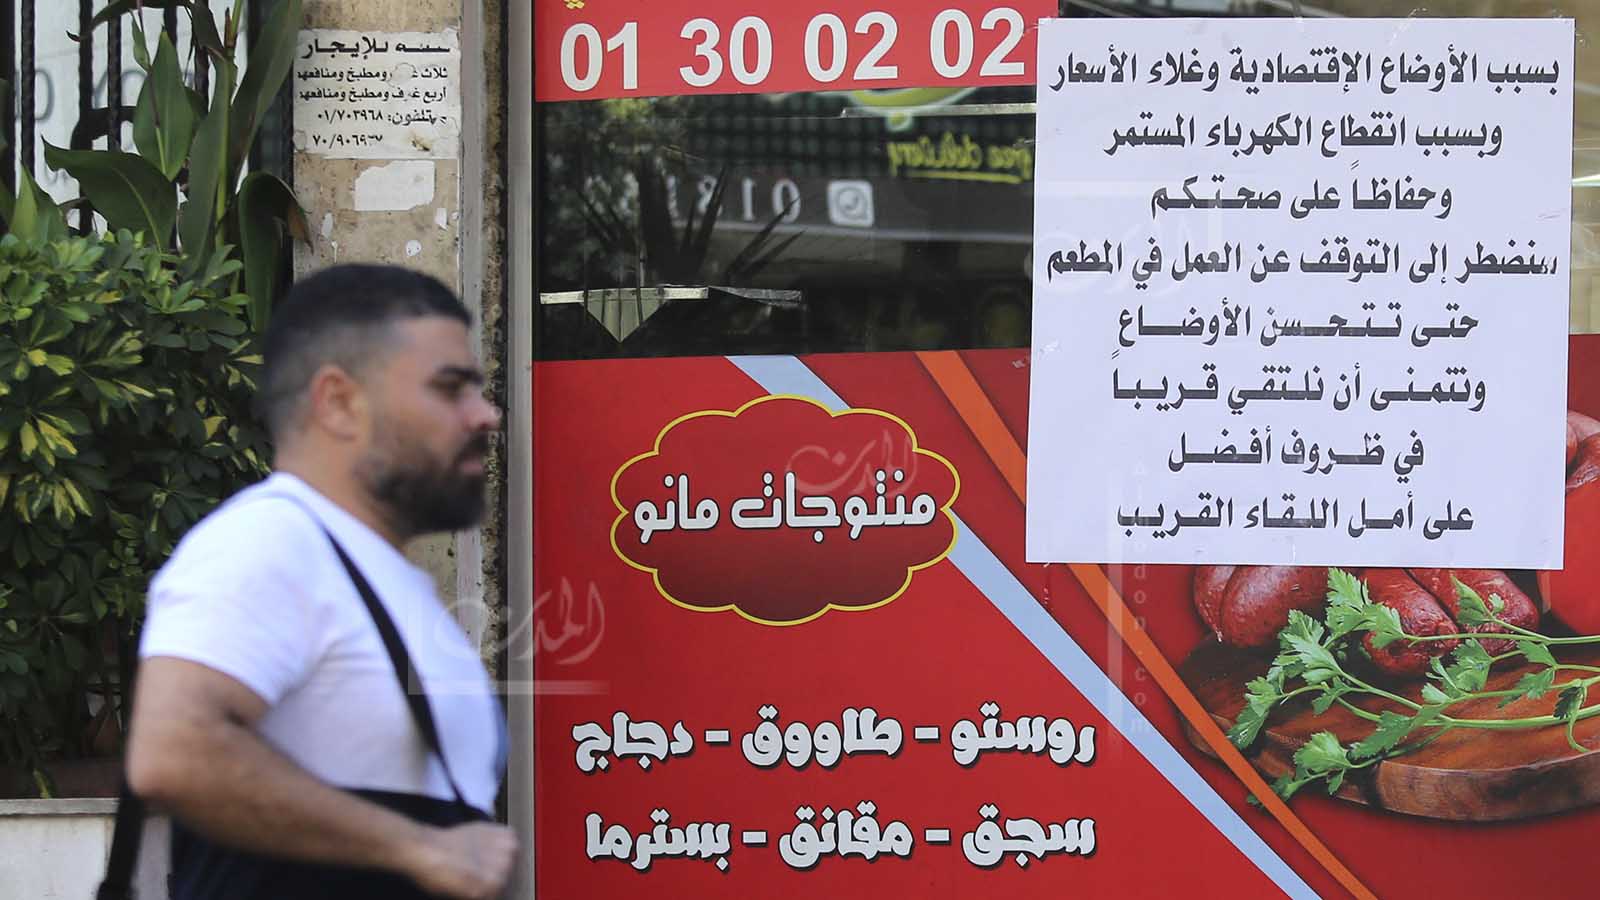 بالأرقام: البطالة تسحق اللبنانيين ورفع الدعم سيضاعف المأساة